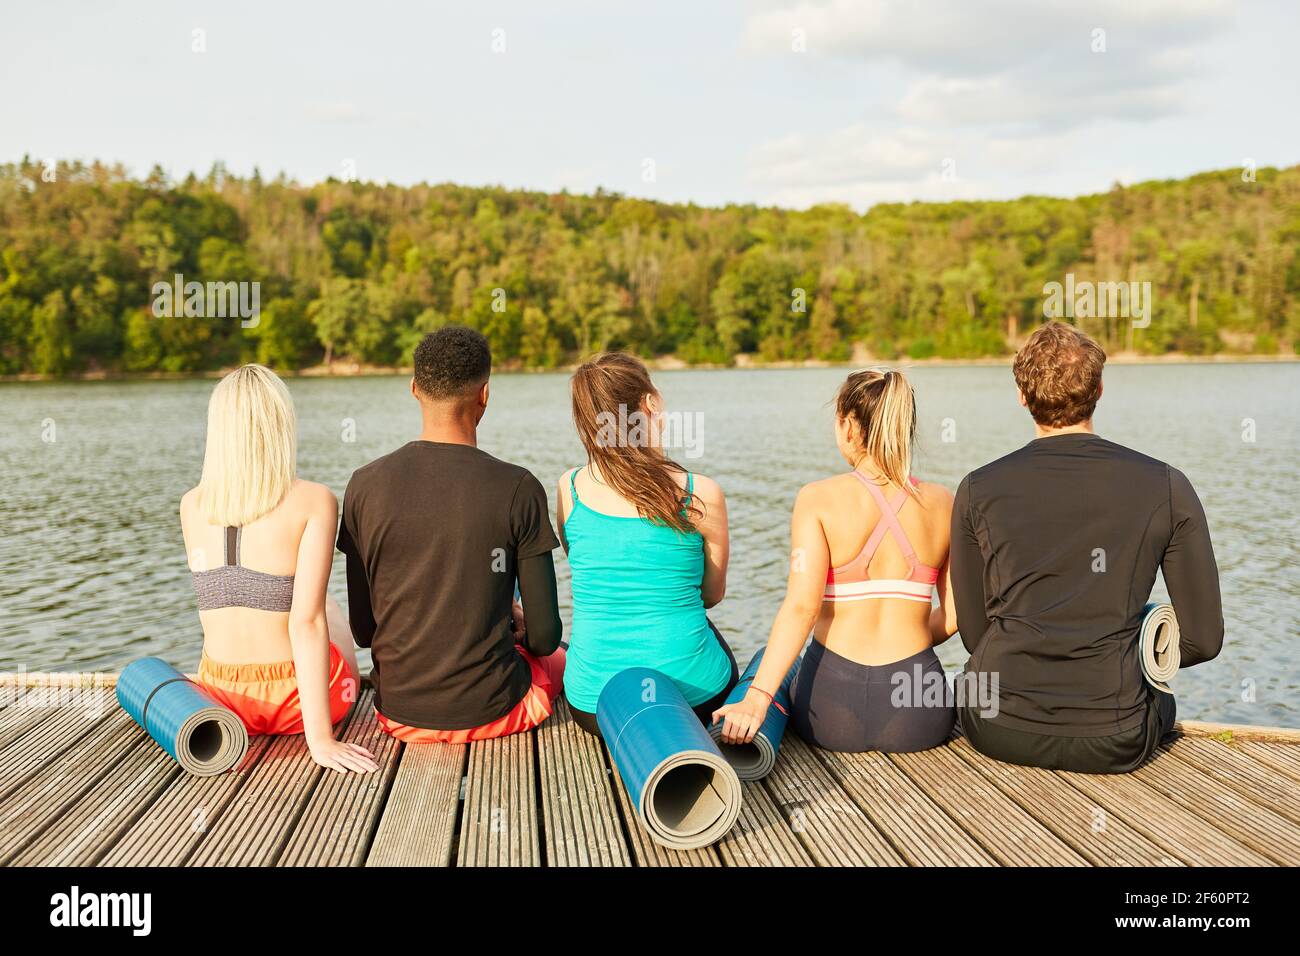 Junge Menschen als Freunde sitzen entspannt in der Natur am see nach einem Fitnesskurs Stockfoto